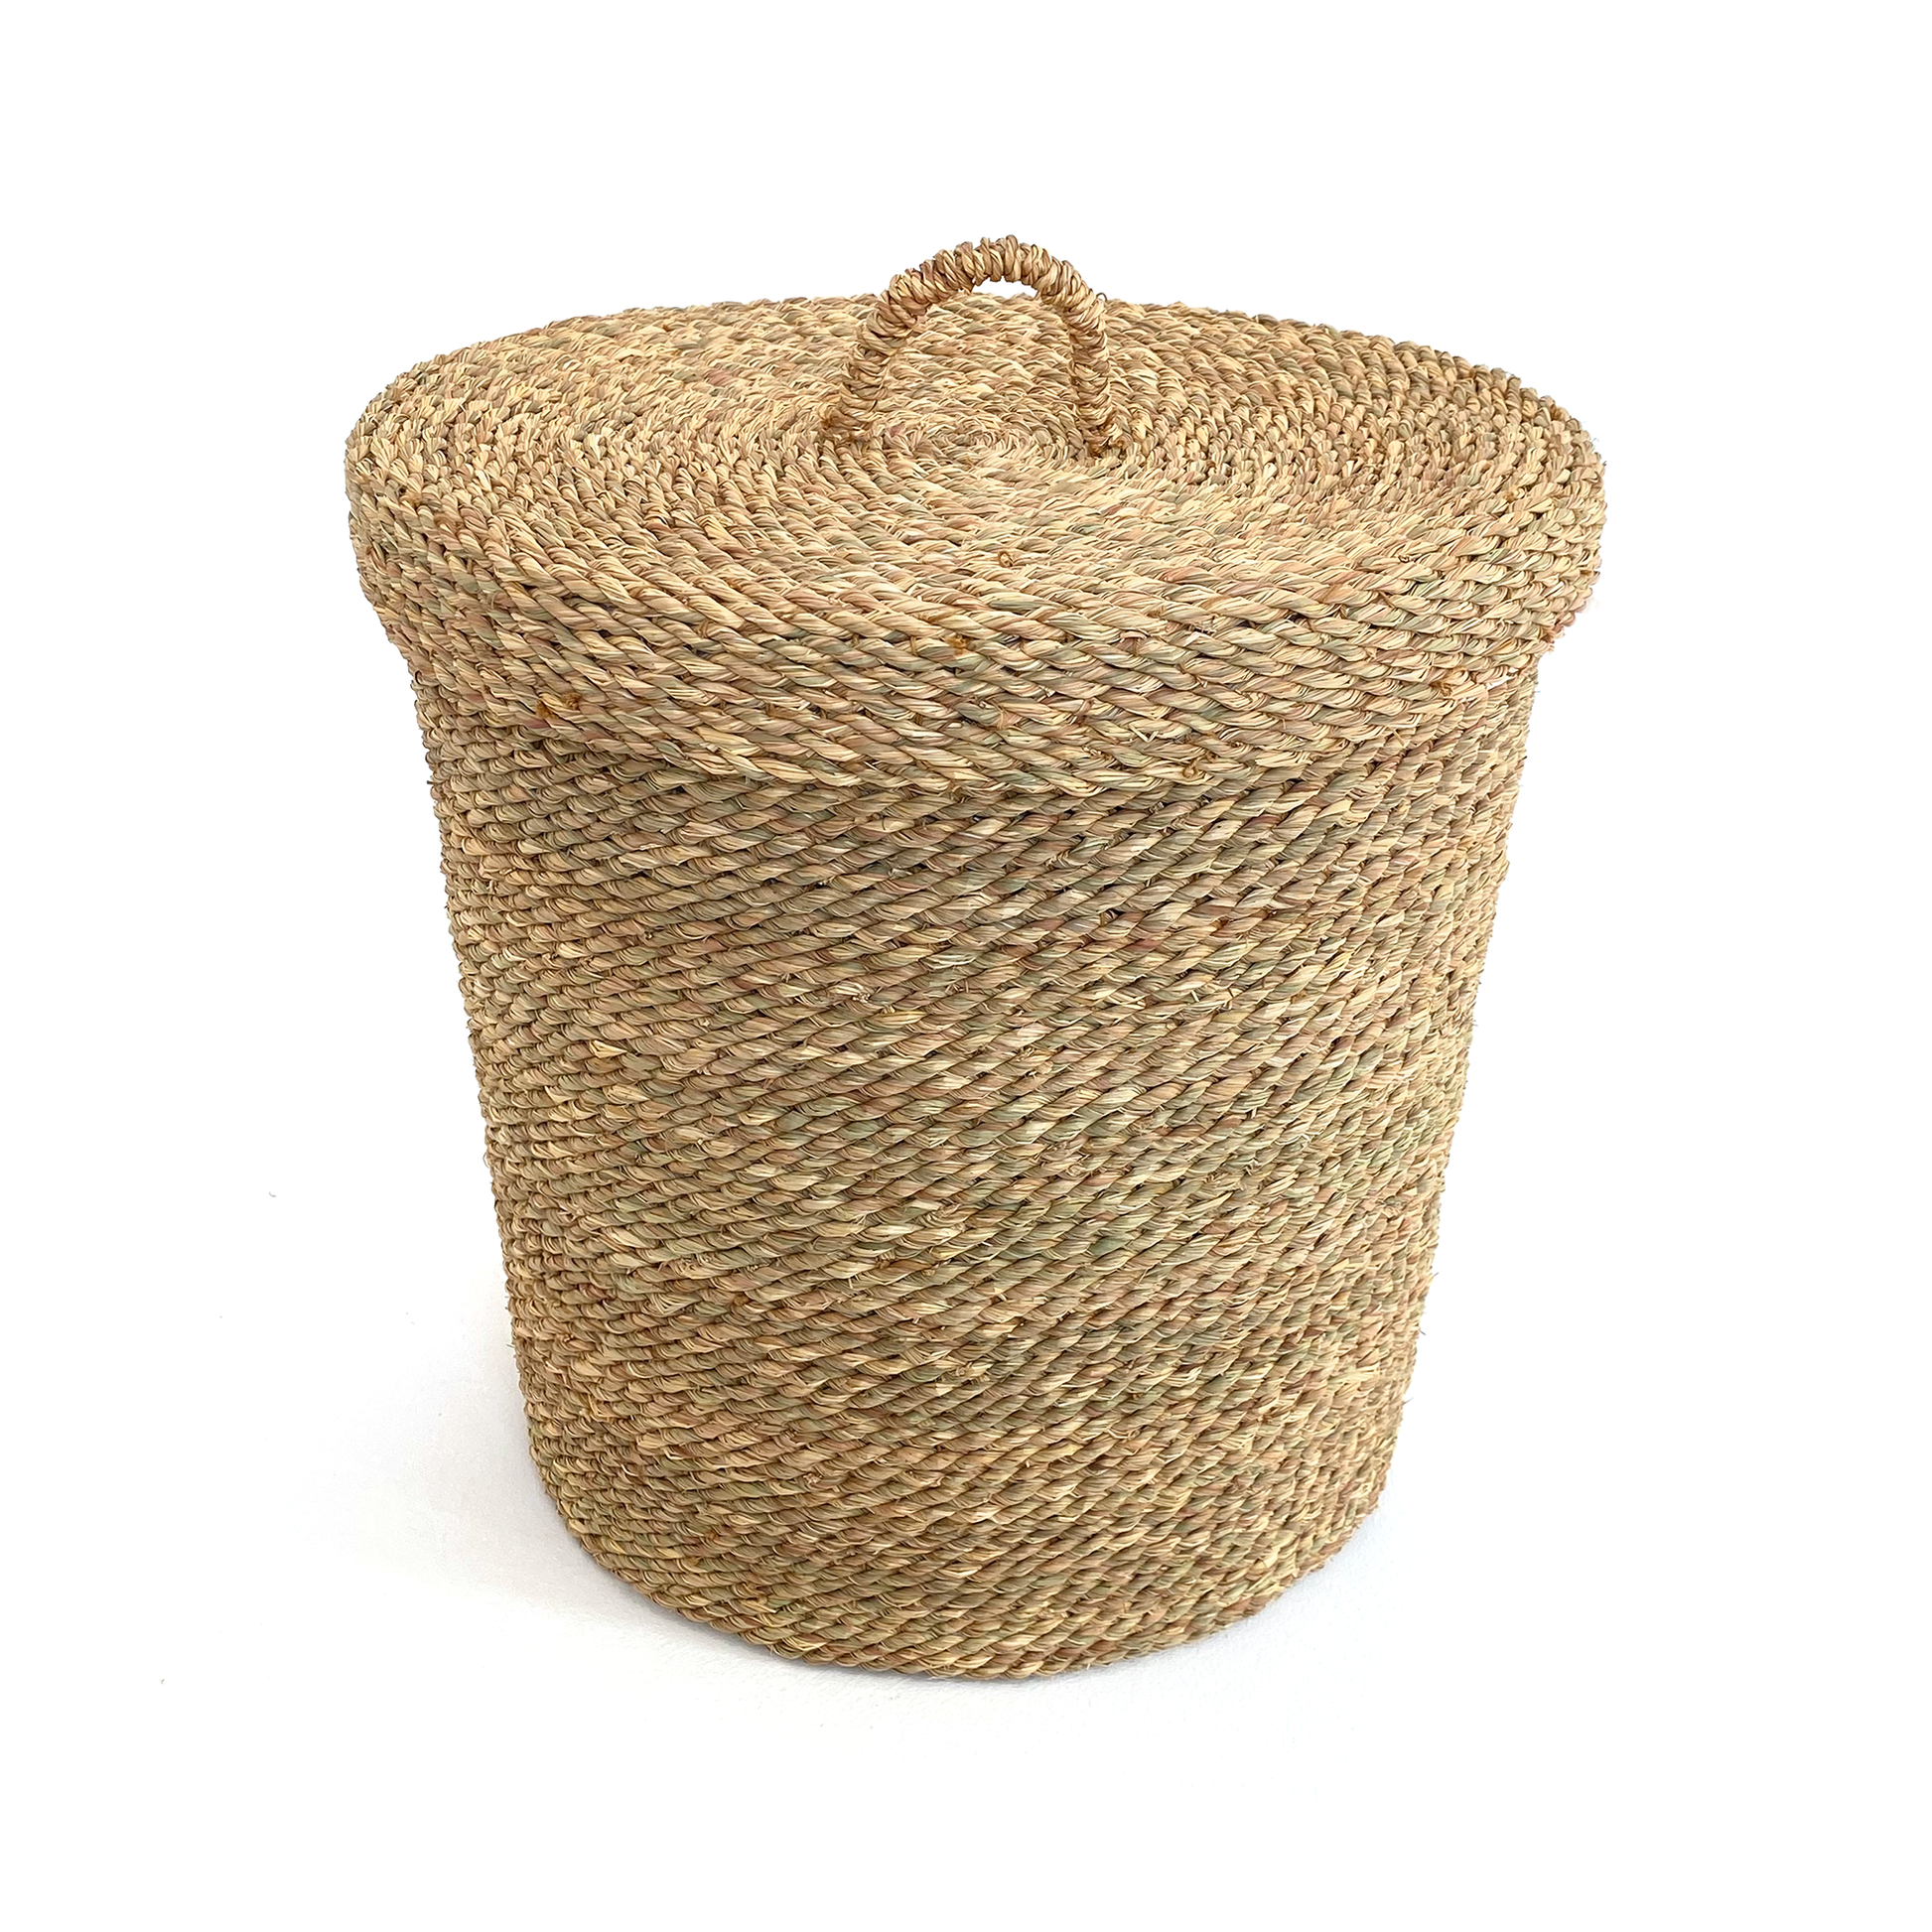 Halfa laundry basket with lid. سلة حلفا للغسيل بغطاء